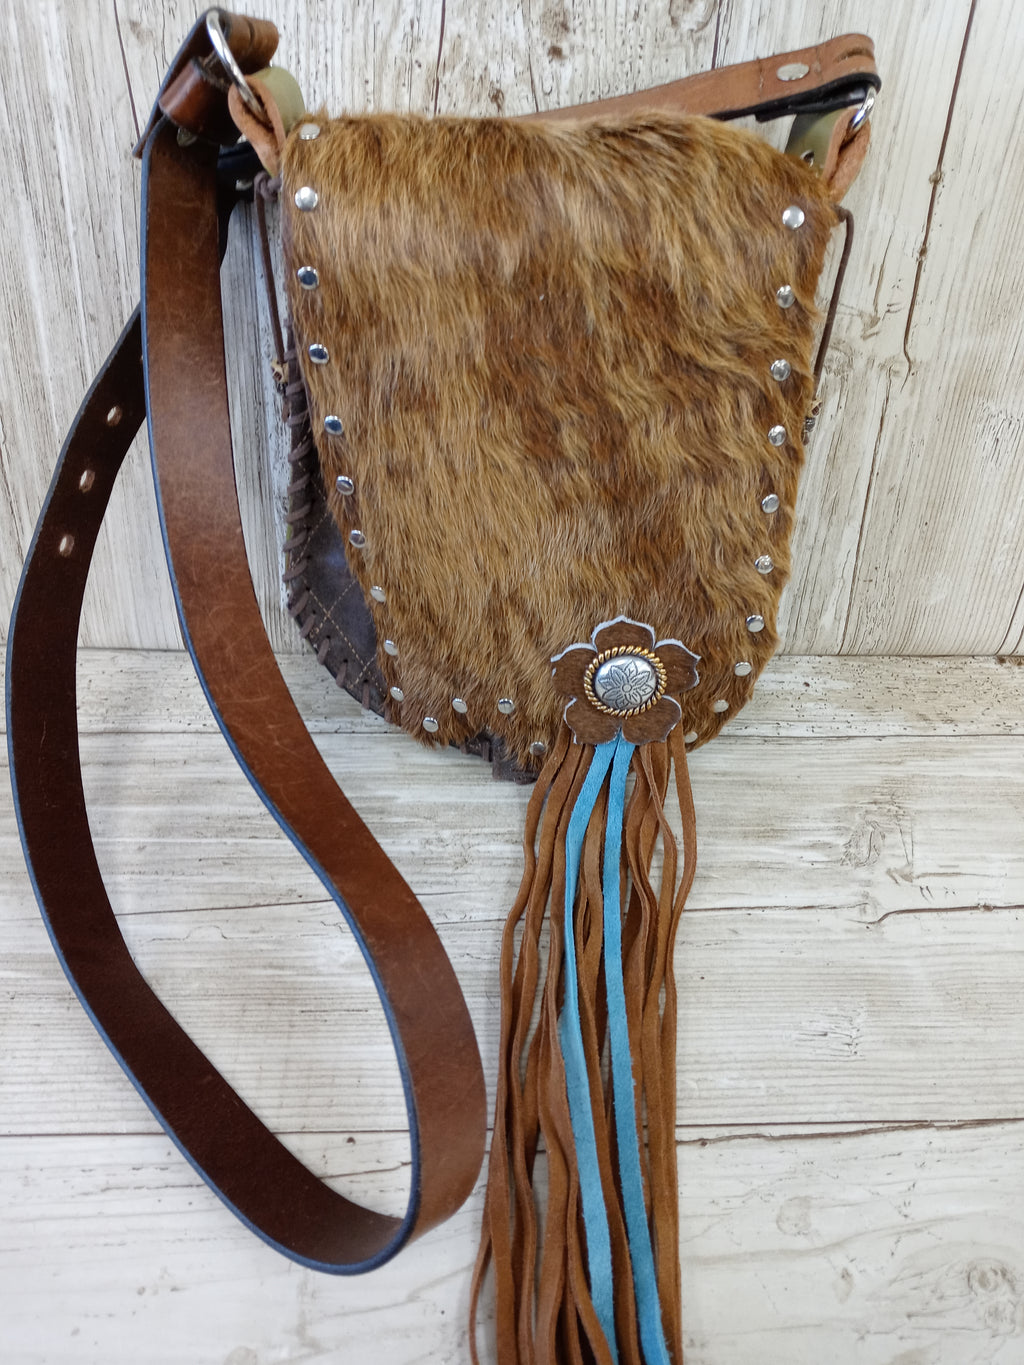 Hair on Hide Bag - Cowboy Boot Purse - Cowhide Purse - Handpainted Purse SB03 Chris Thompson Bags